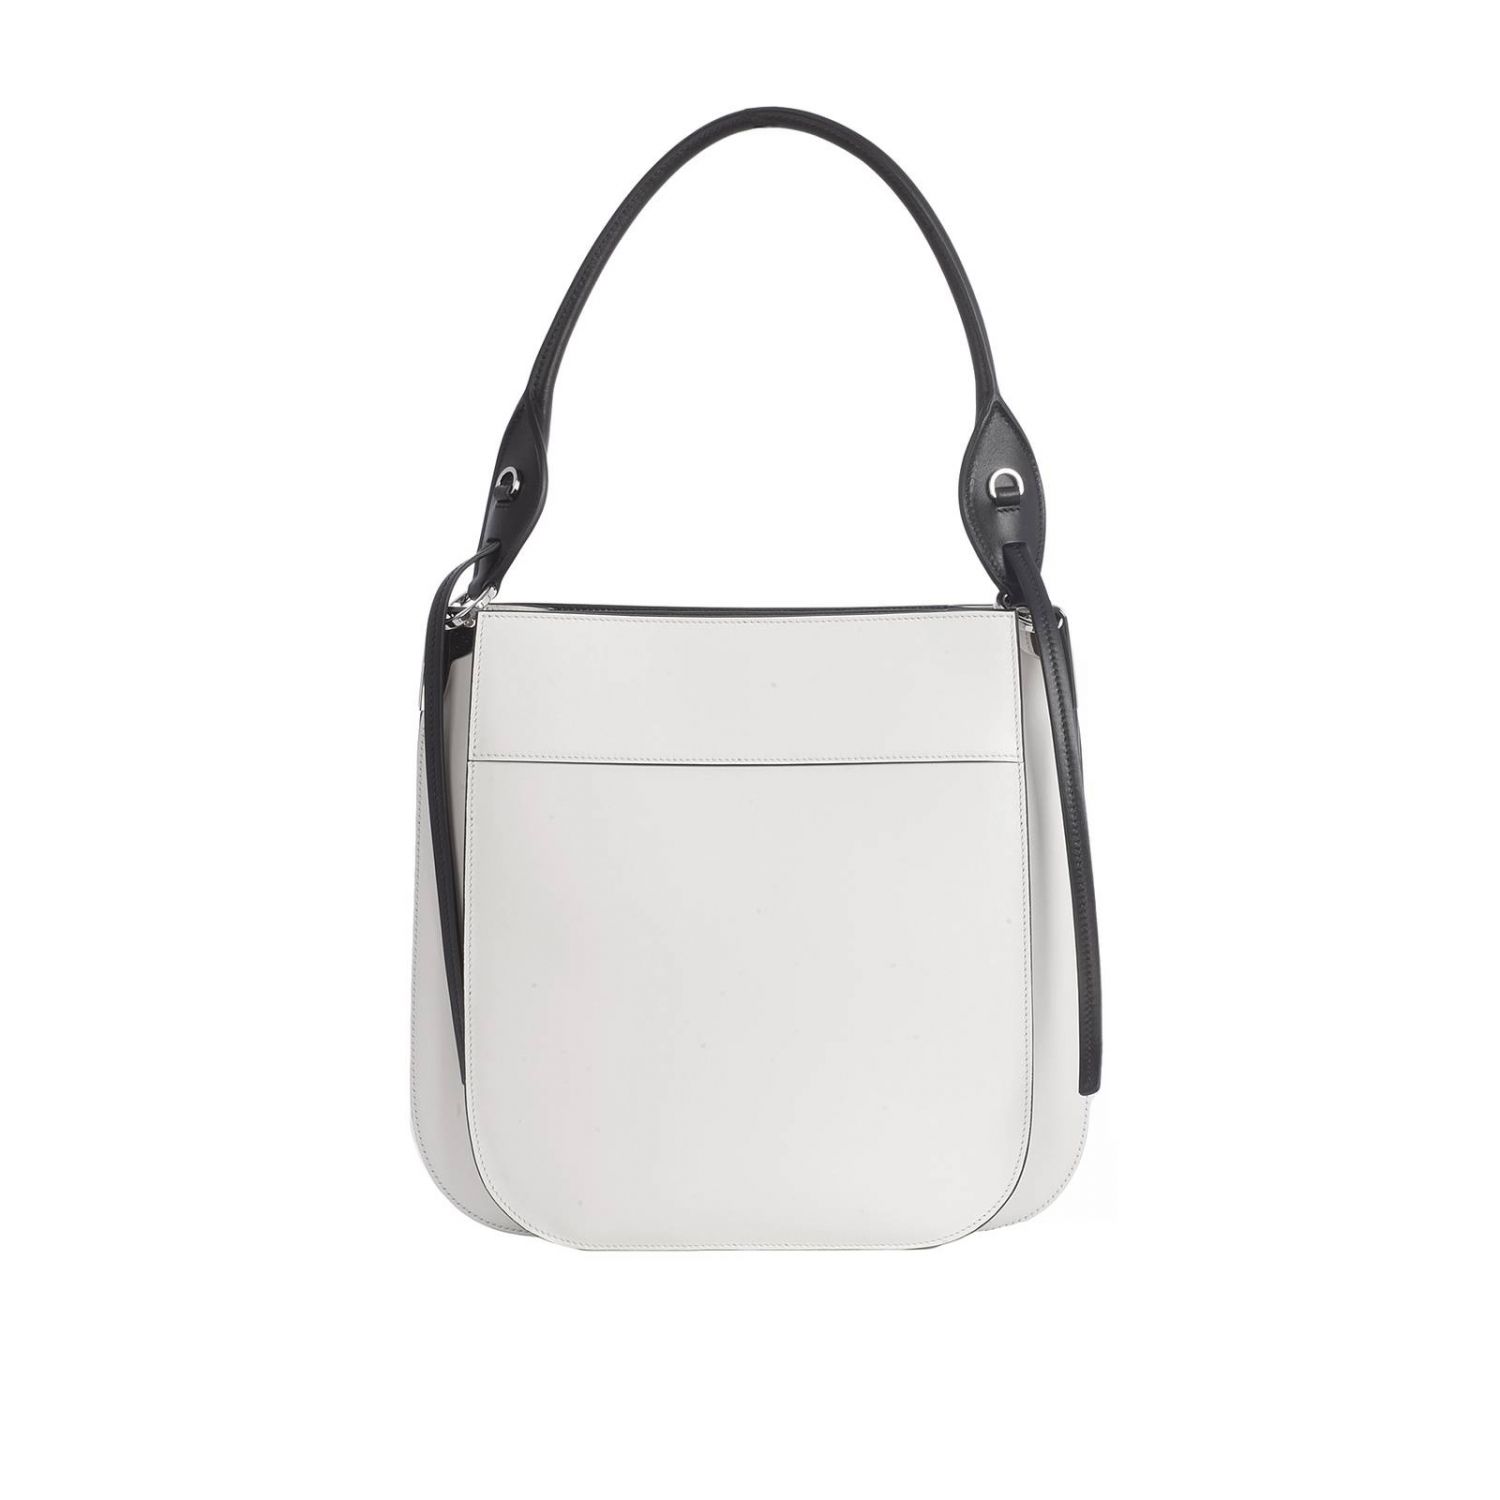 PRADA: Margit large bag in leather bag with Monochrome logo | Shoulder ...